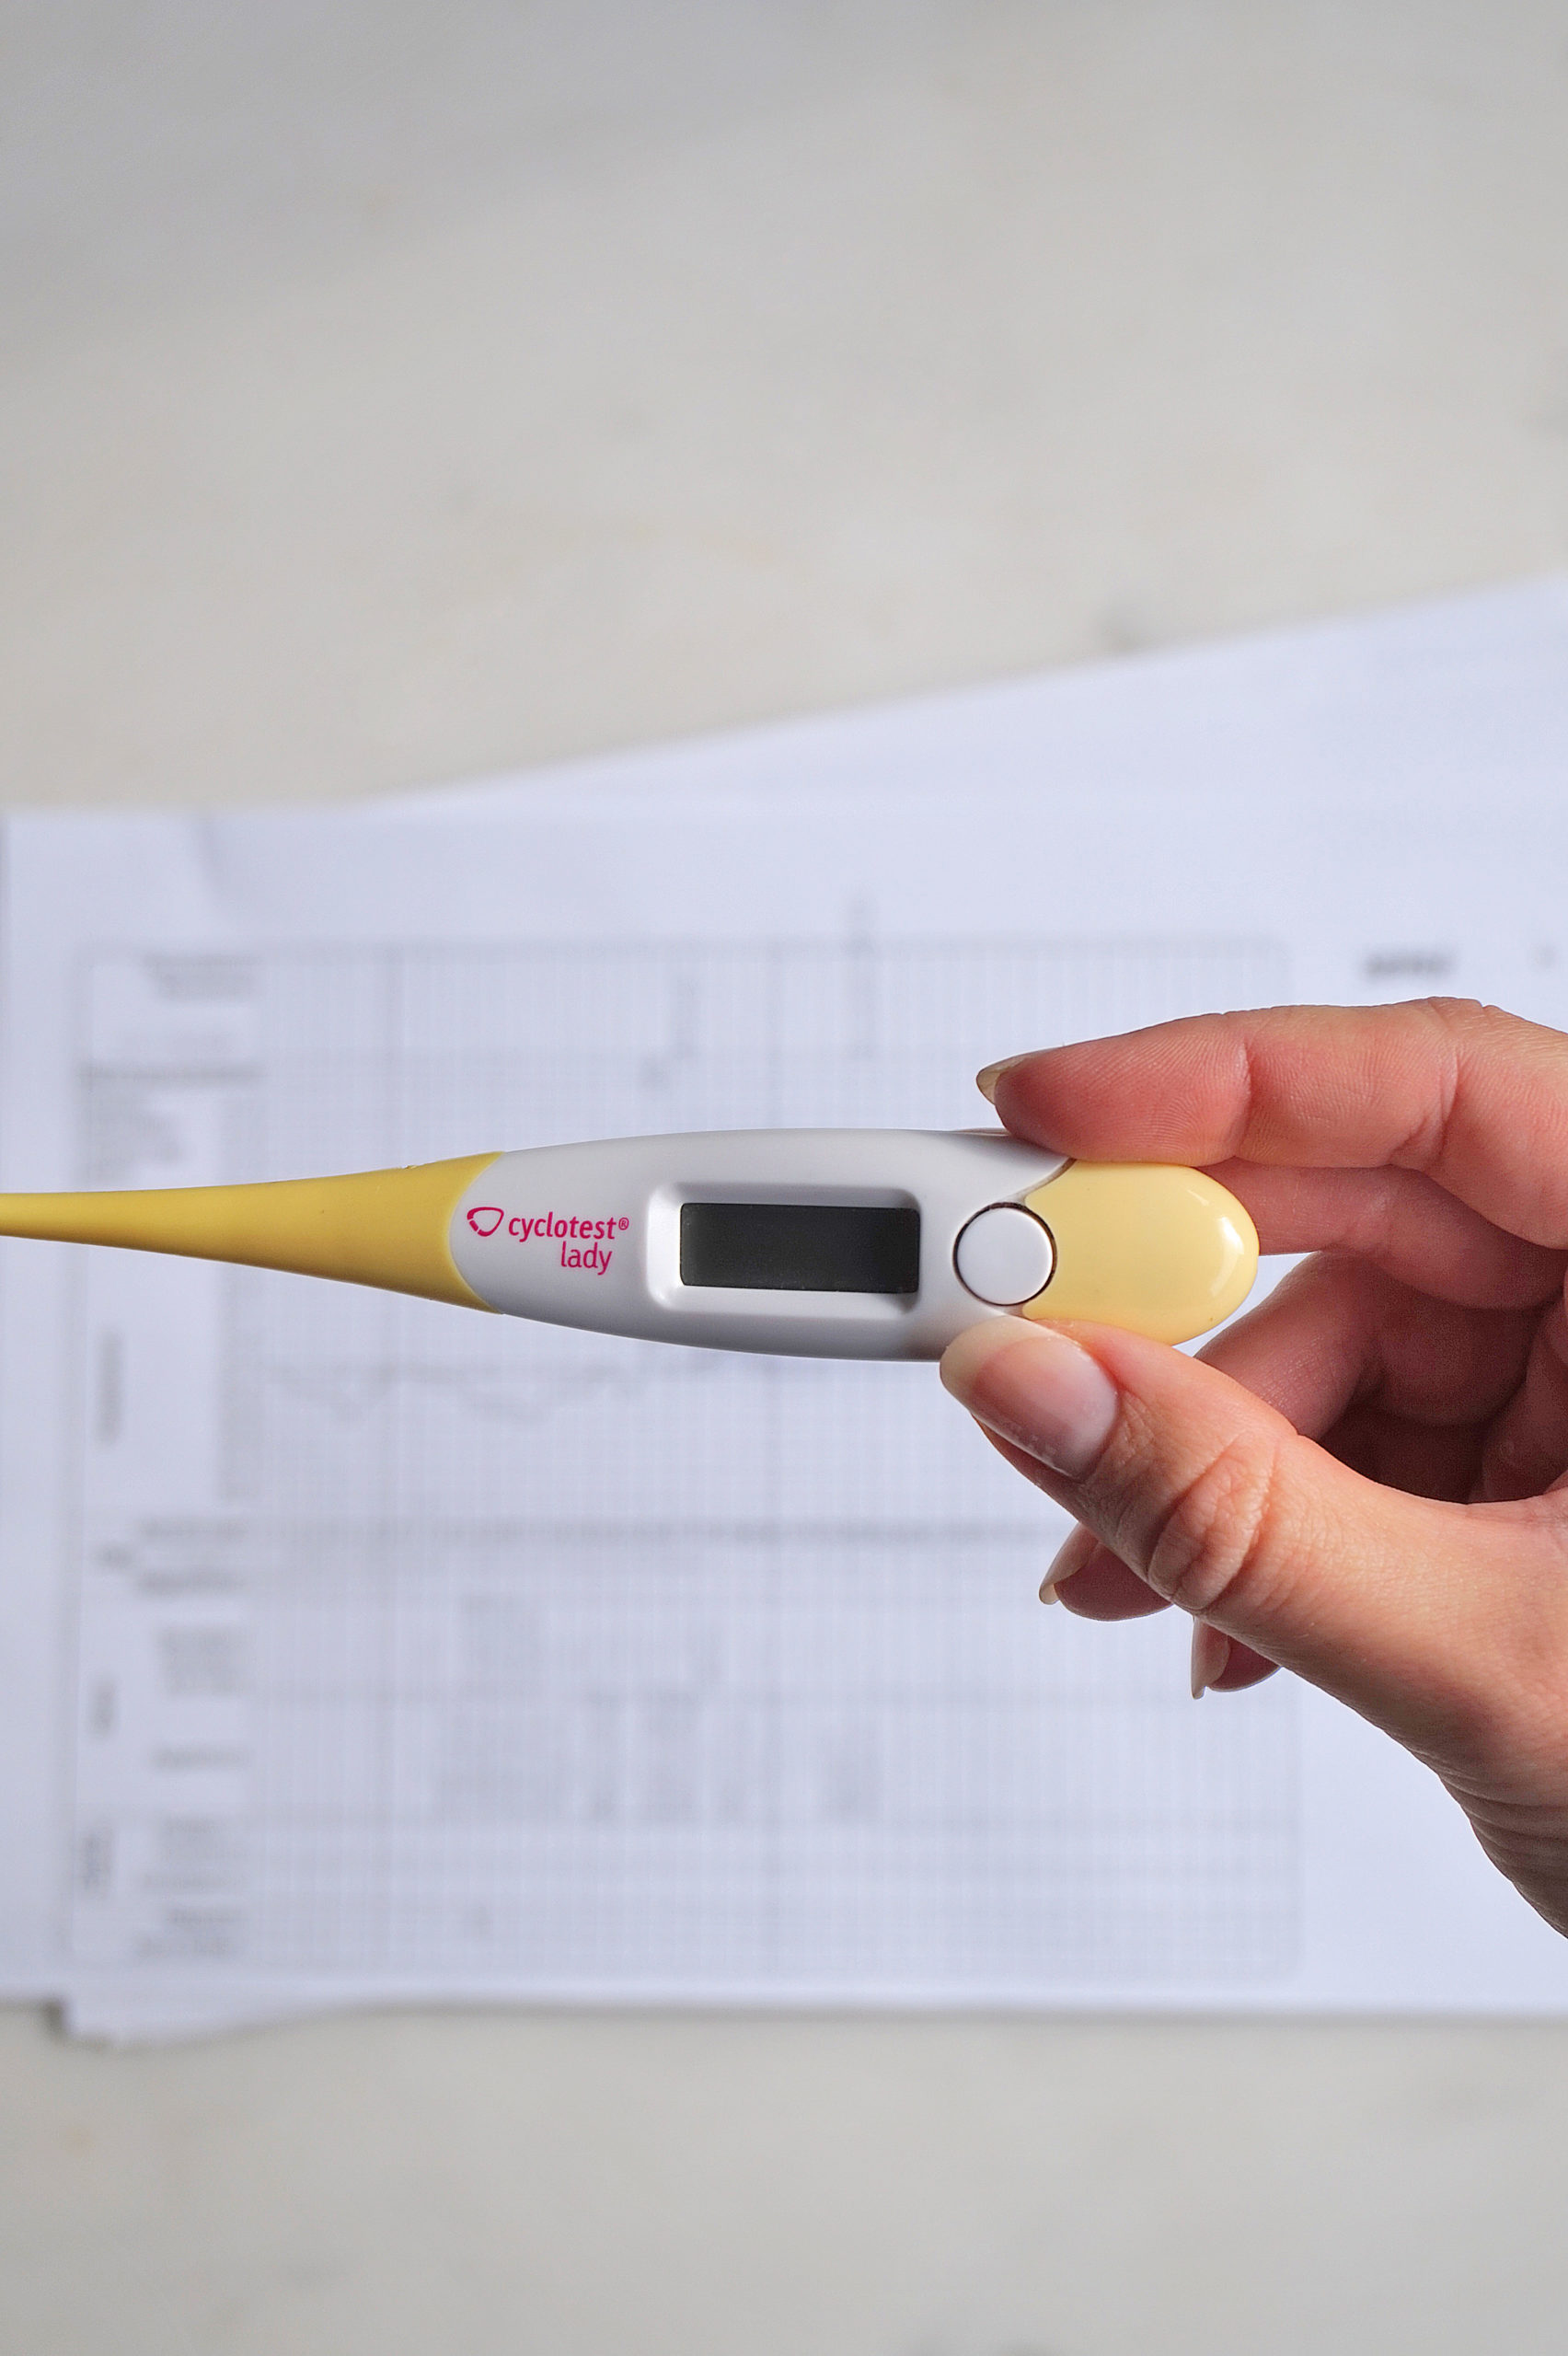 Thermomètre basal pour symptothermie : Comment bien le choisir